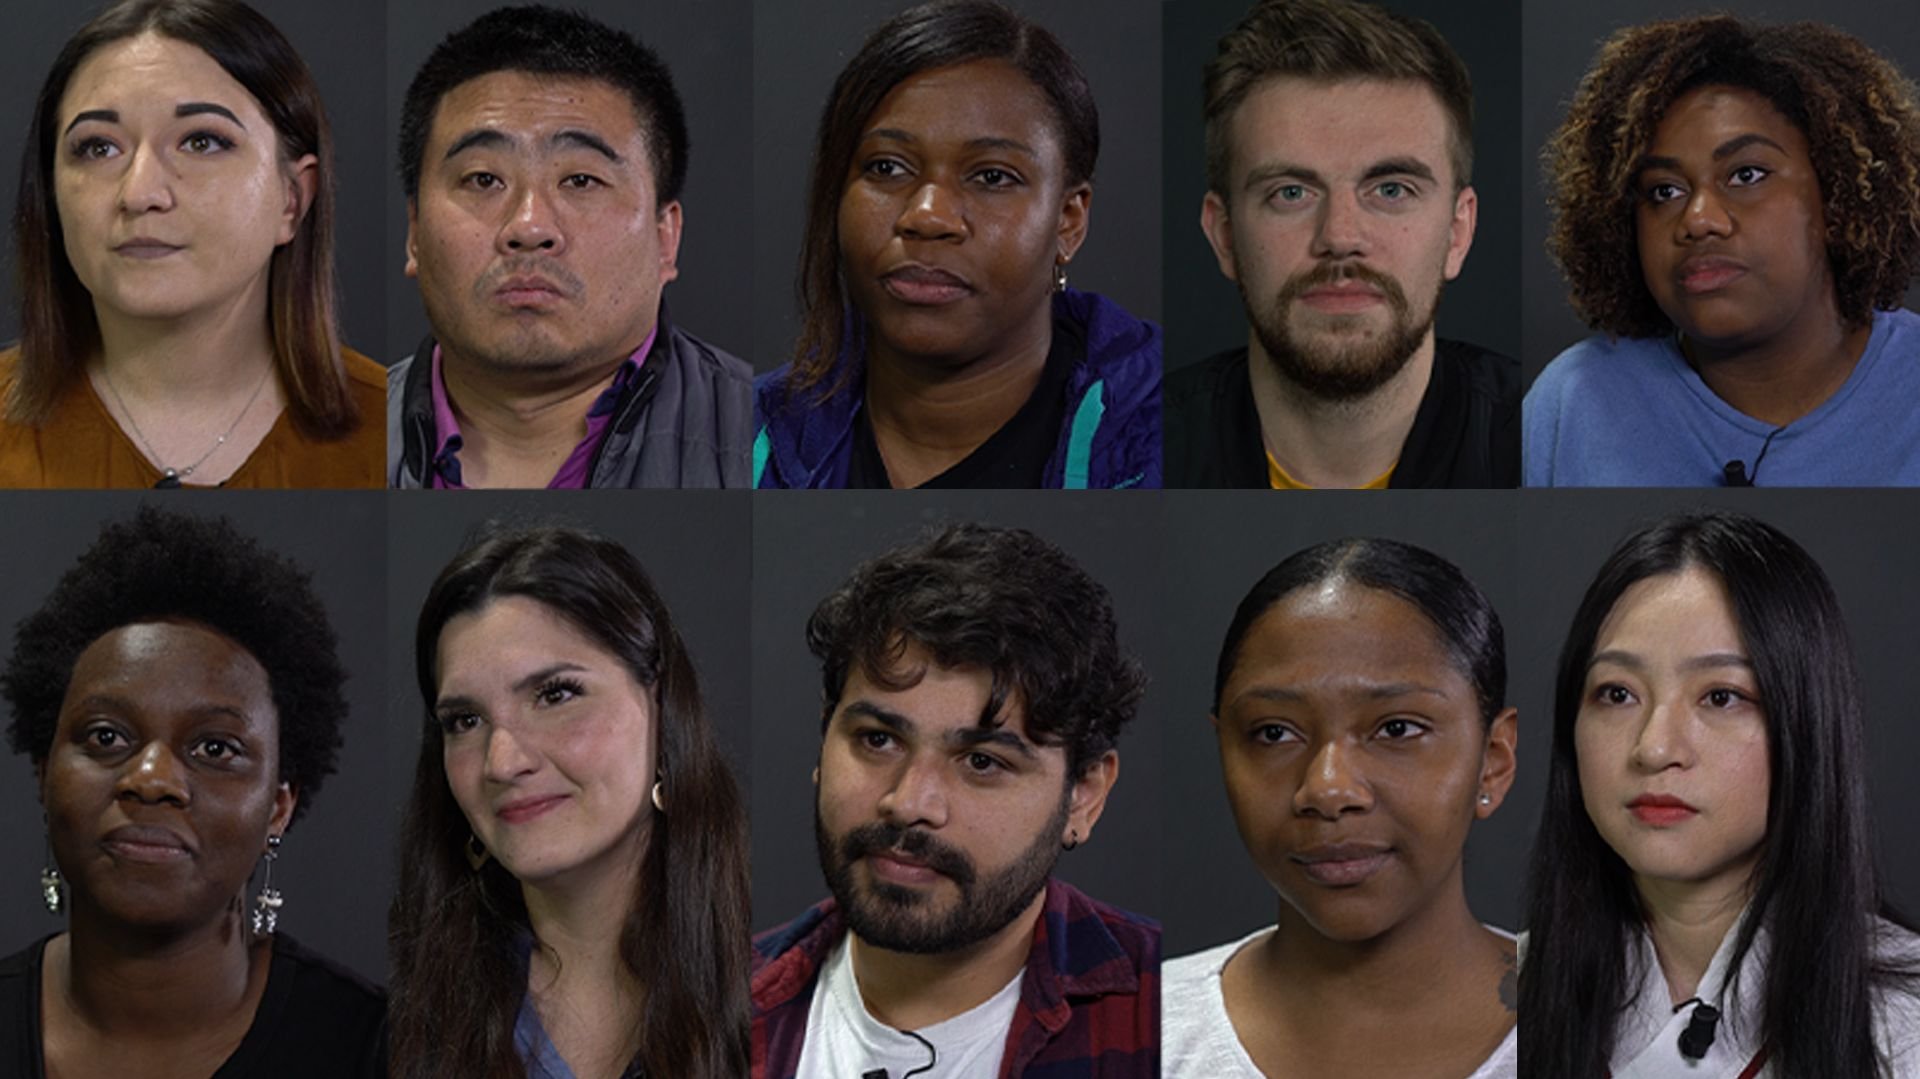 No vídeo, publicado no Observador em março, dez pessoas de diferentes origens e etnias partilham as suas experiências diárias